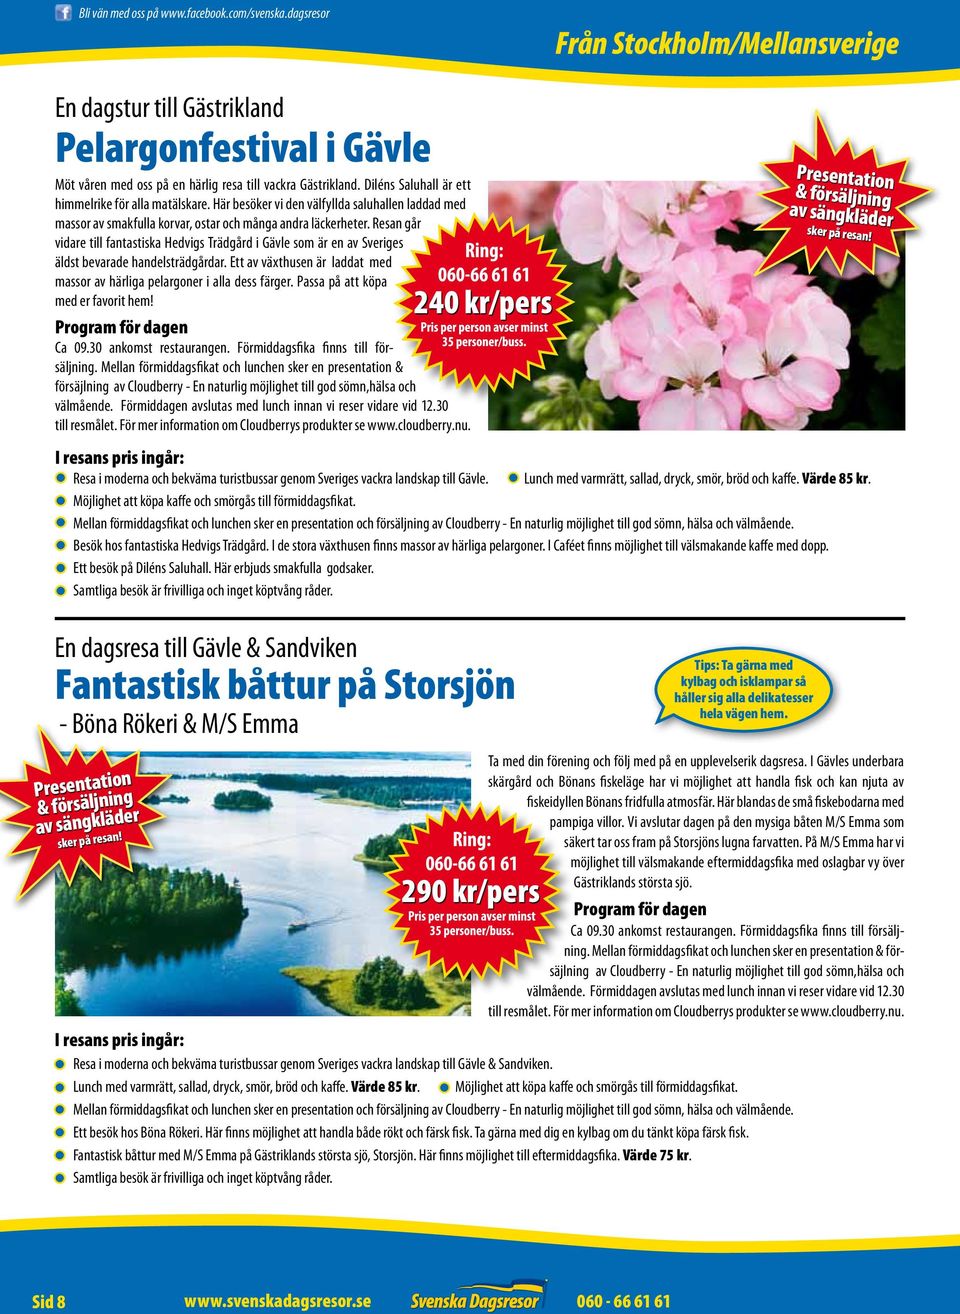 Resan går vidare till fantastiska Hedvigs Trädgård i Gävle som är en av Sveriges äldst bevarade handelsträdgårdar. Ett av växthusen är laddat med massor av härliga pelargoner i alla dess färger.